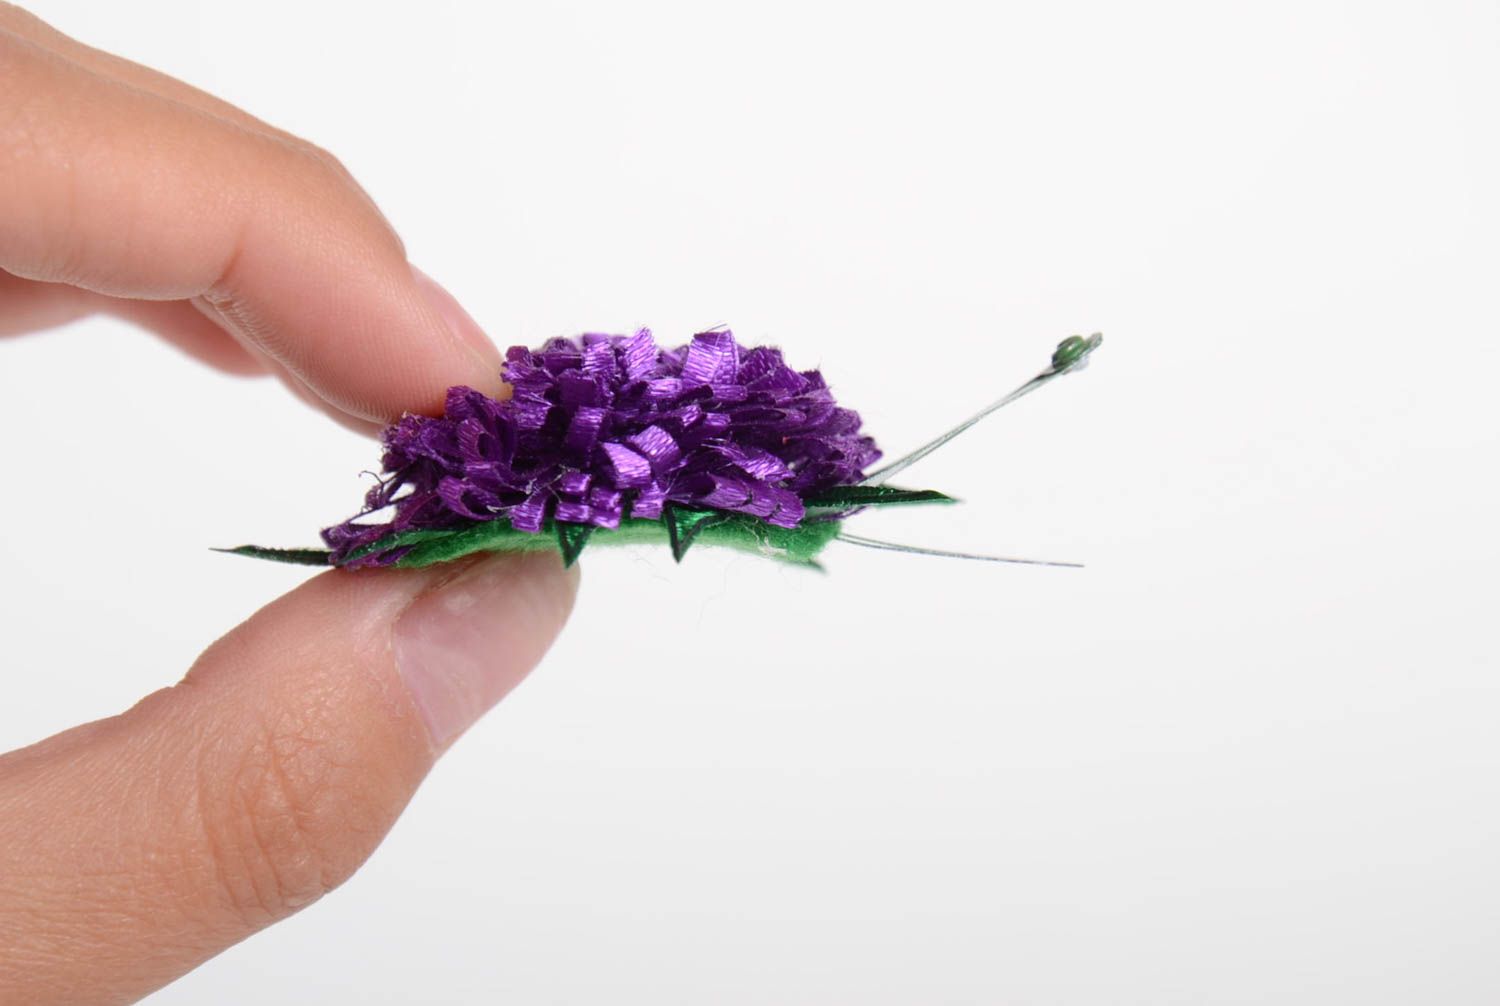 Объемная заколка для волос в виде фиолетового цветка из флиса аксессуар хендмейд фото 2